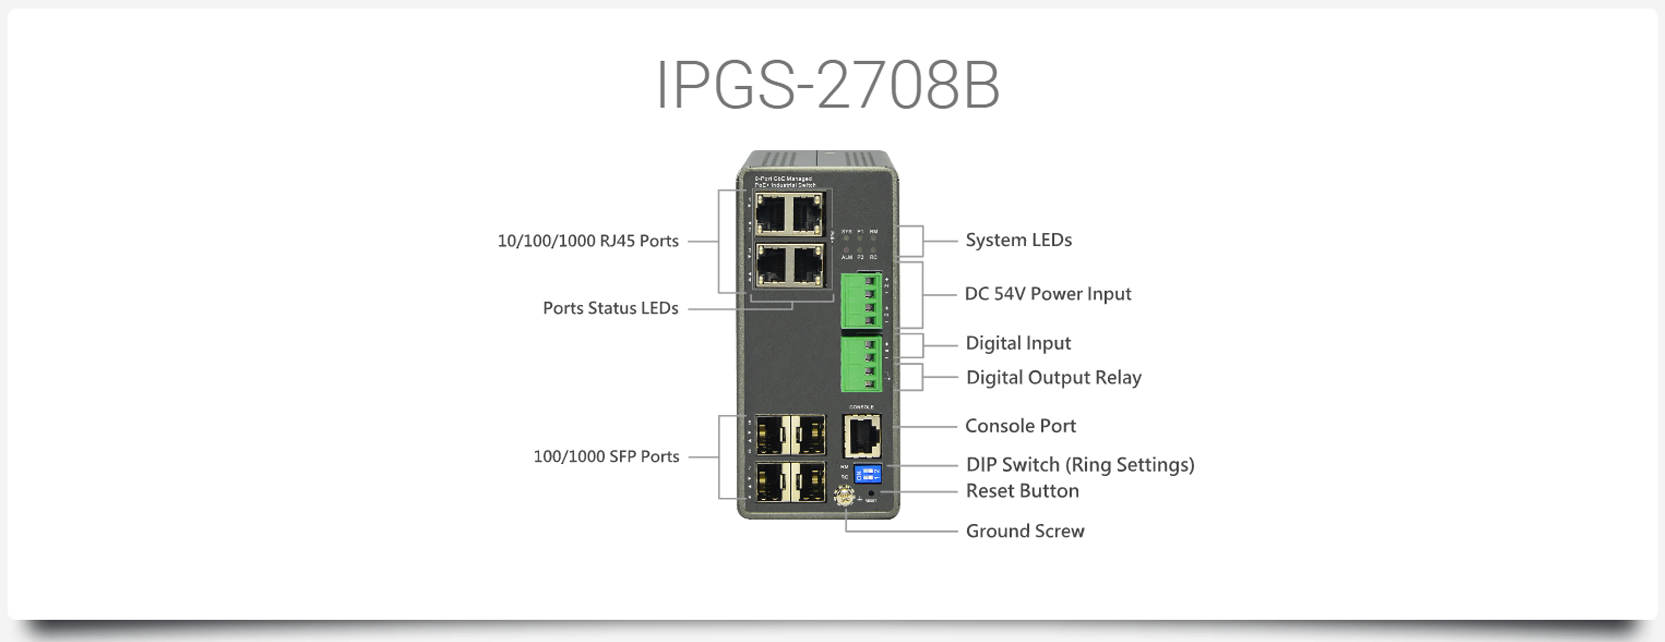 IPGS-2708B